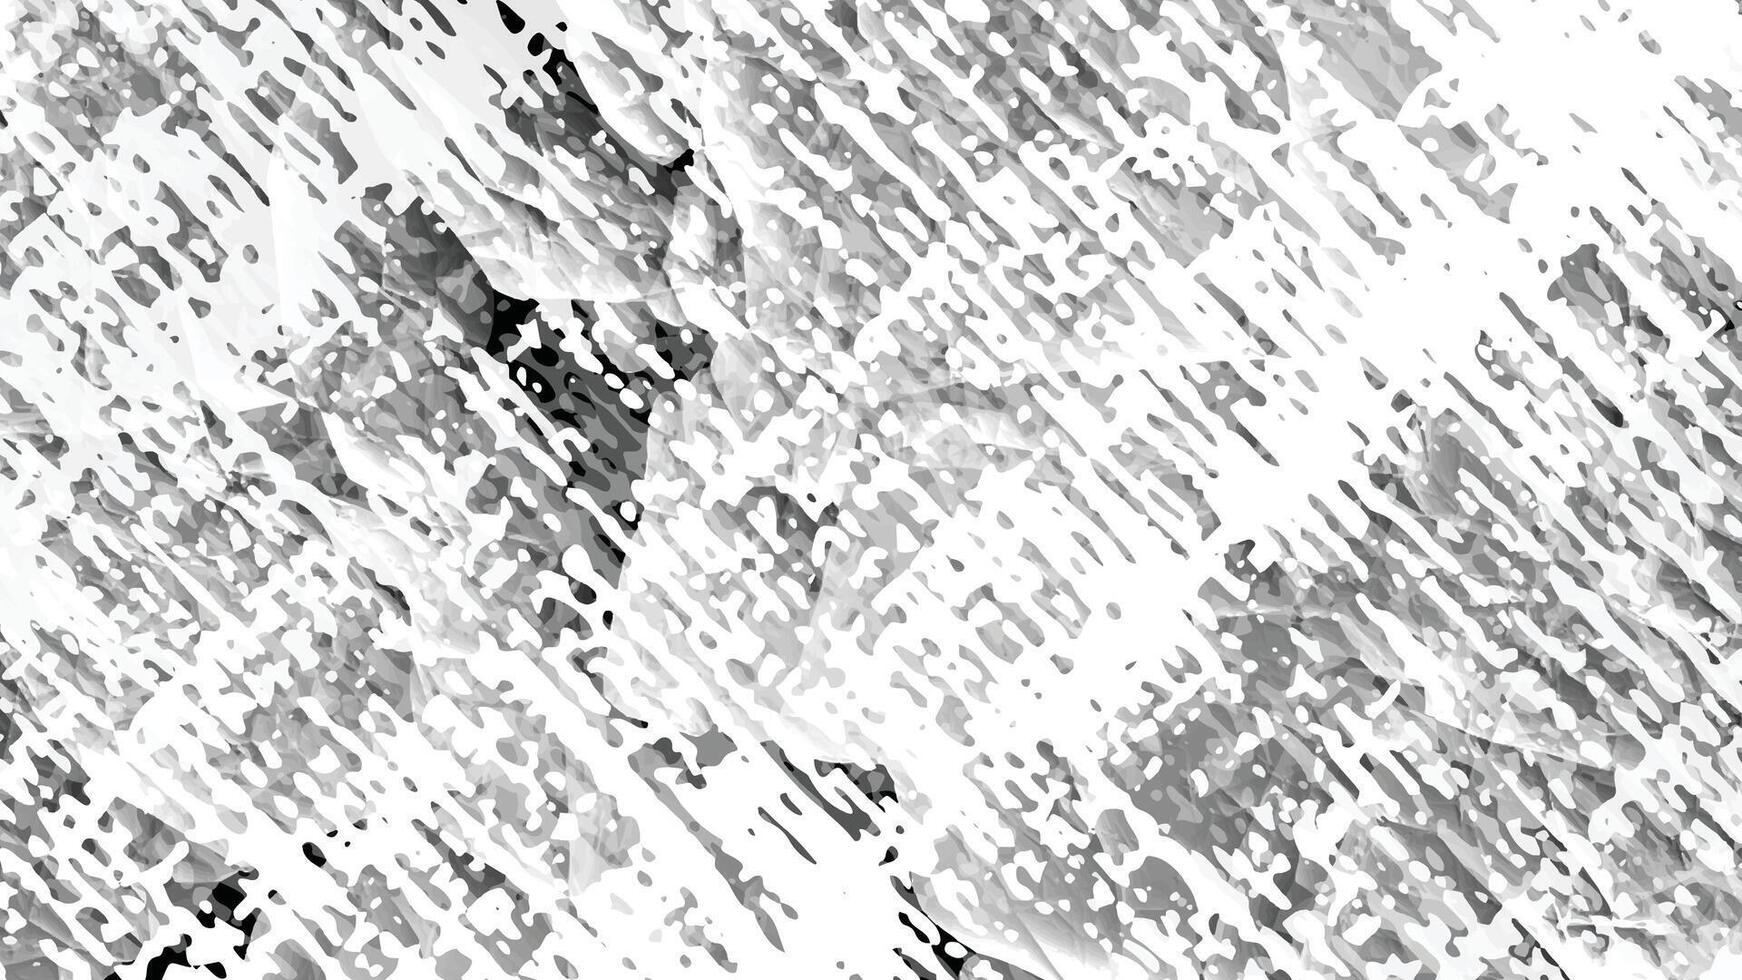 bedrövad ojämn grunge bakgrund. abstrakt illustration. täcka över till skapa intressant effekt och djup. isolerat på vit. vektor